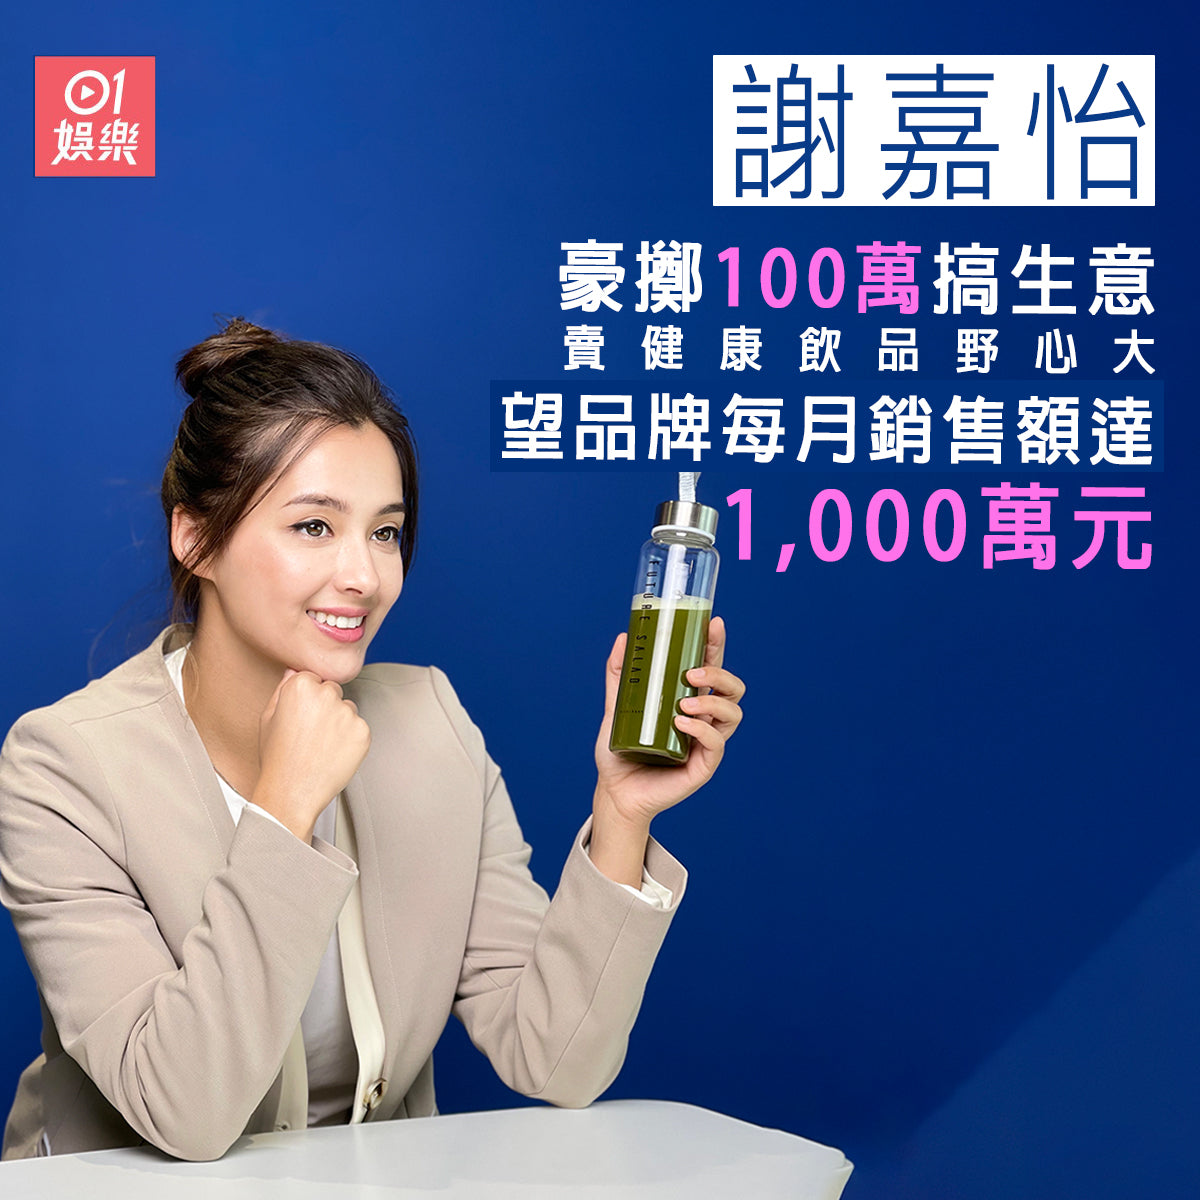 HK01: 謝嘉怡豪擲100萬搞生意